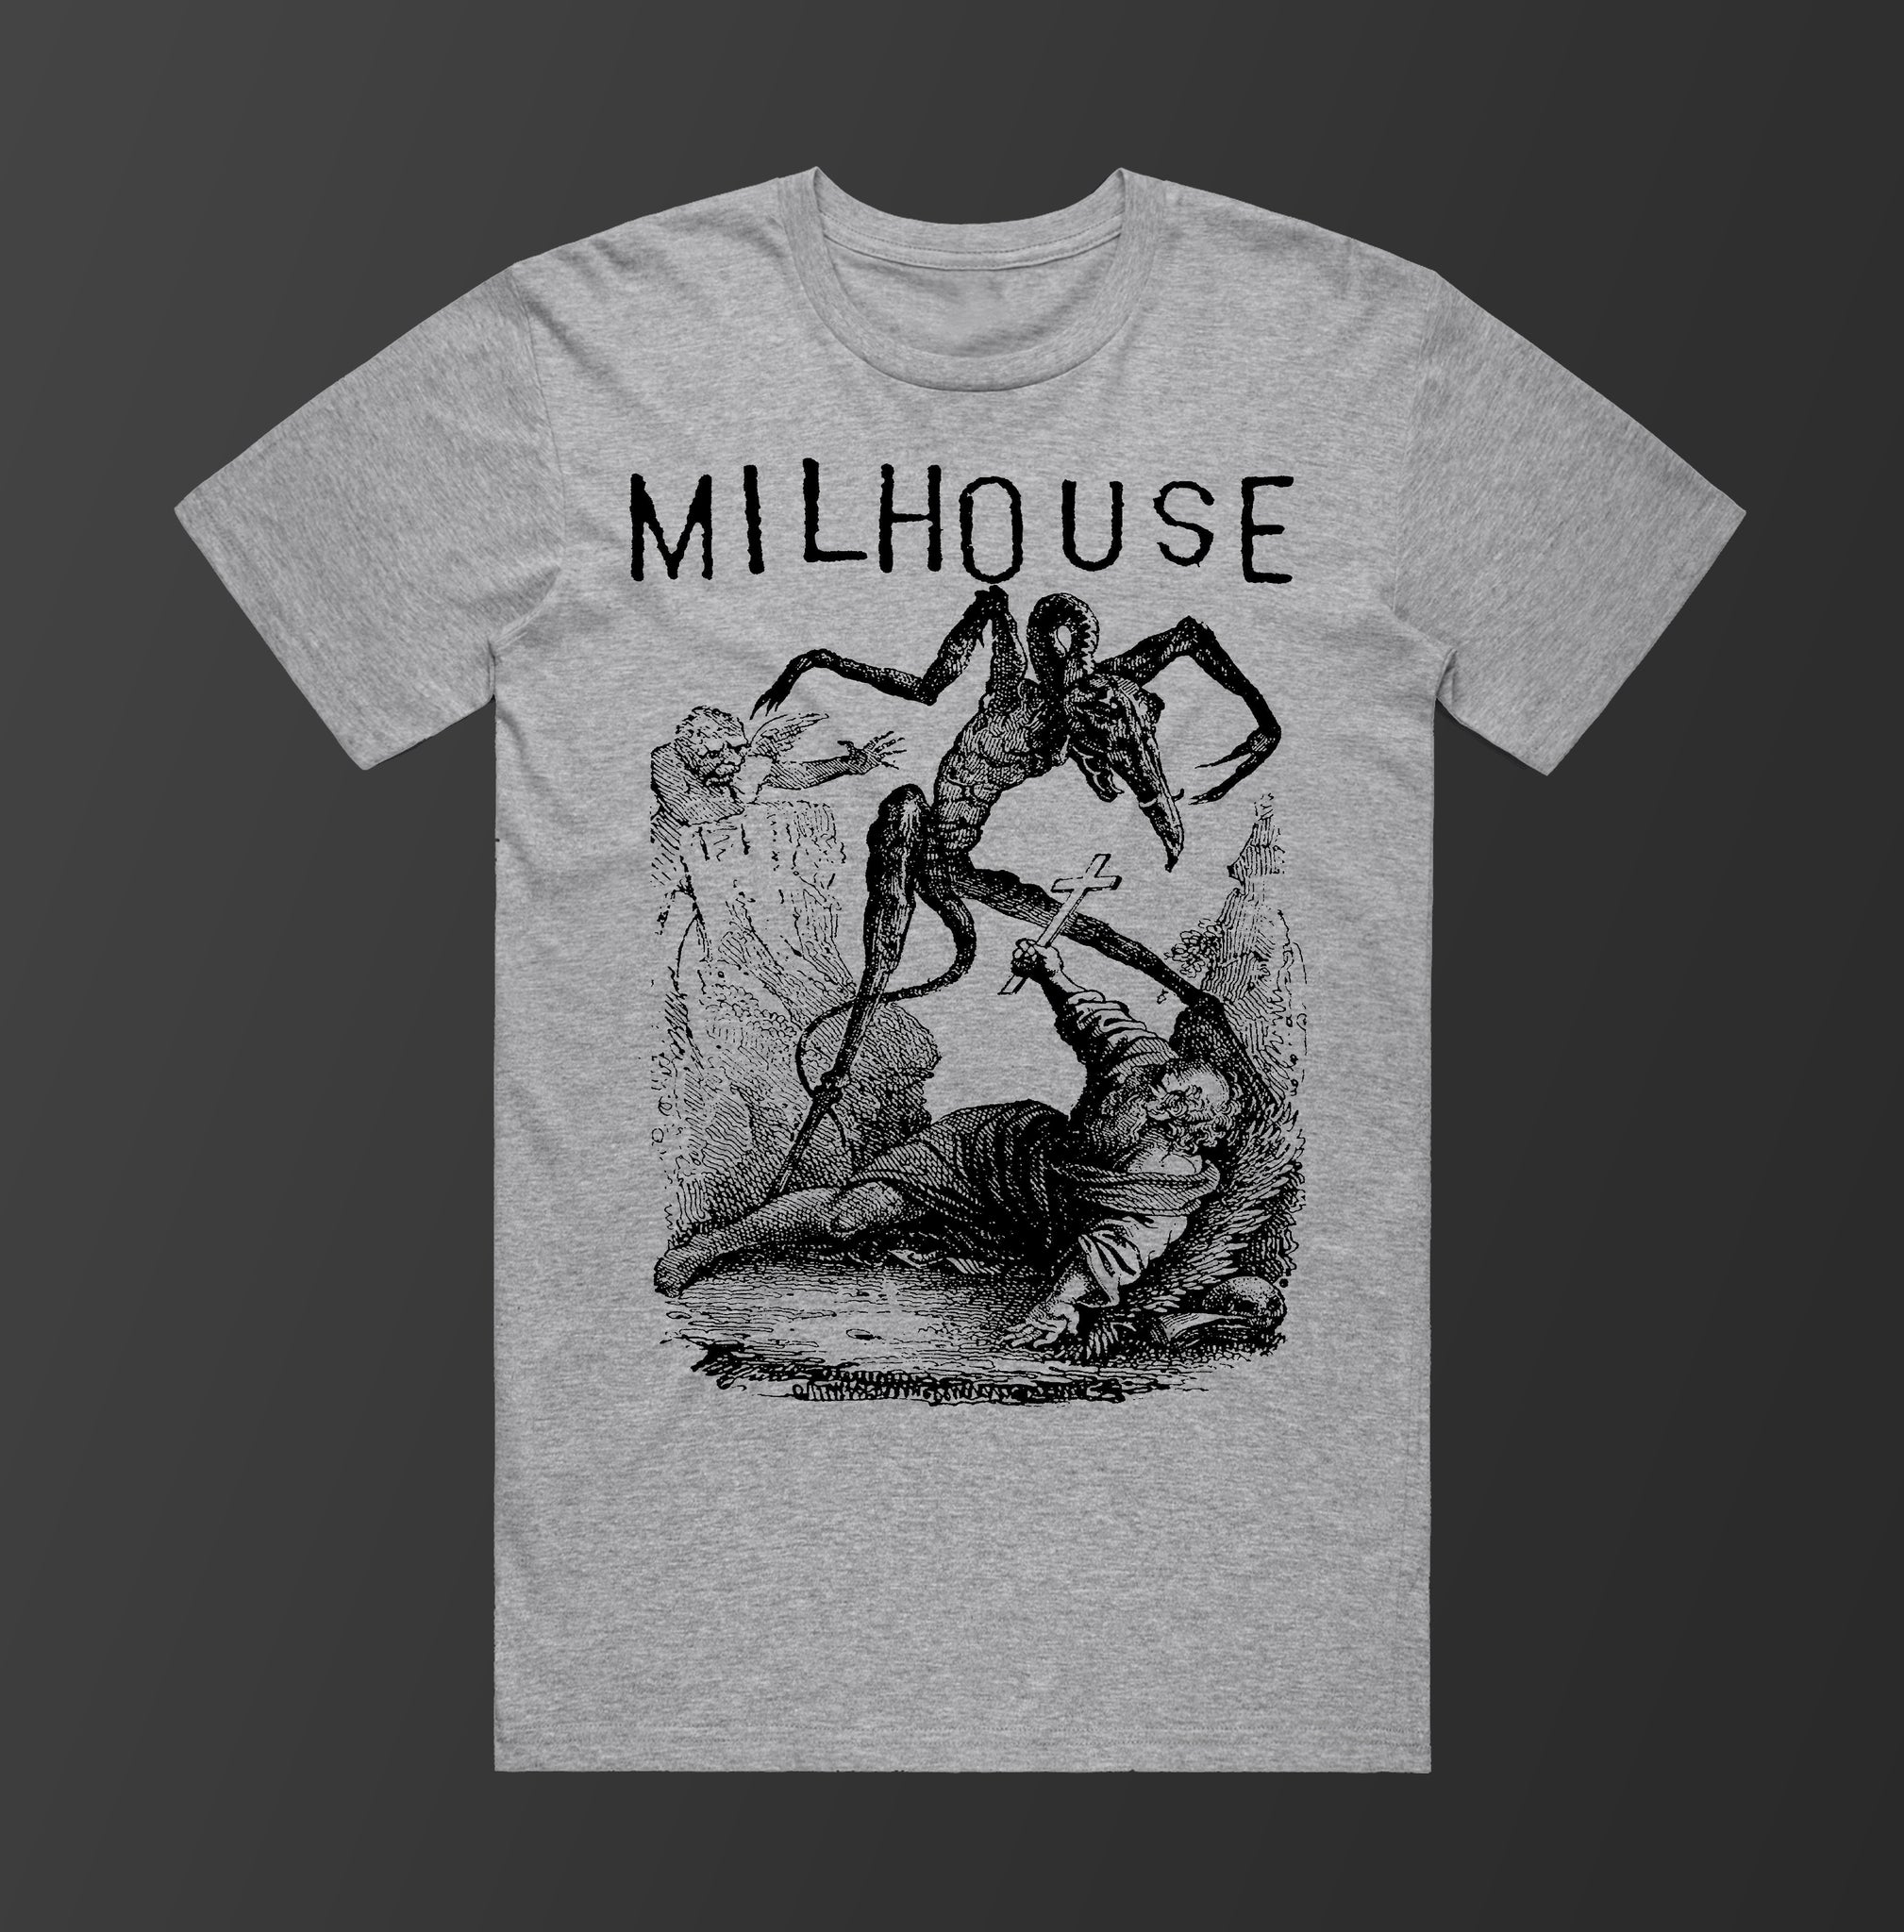 Milhouse "Demon" Shirt